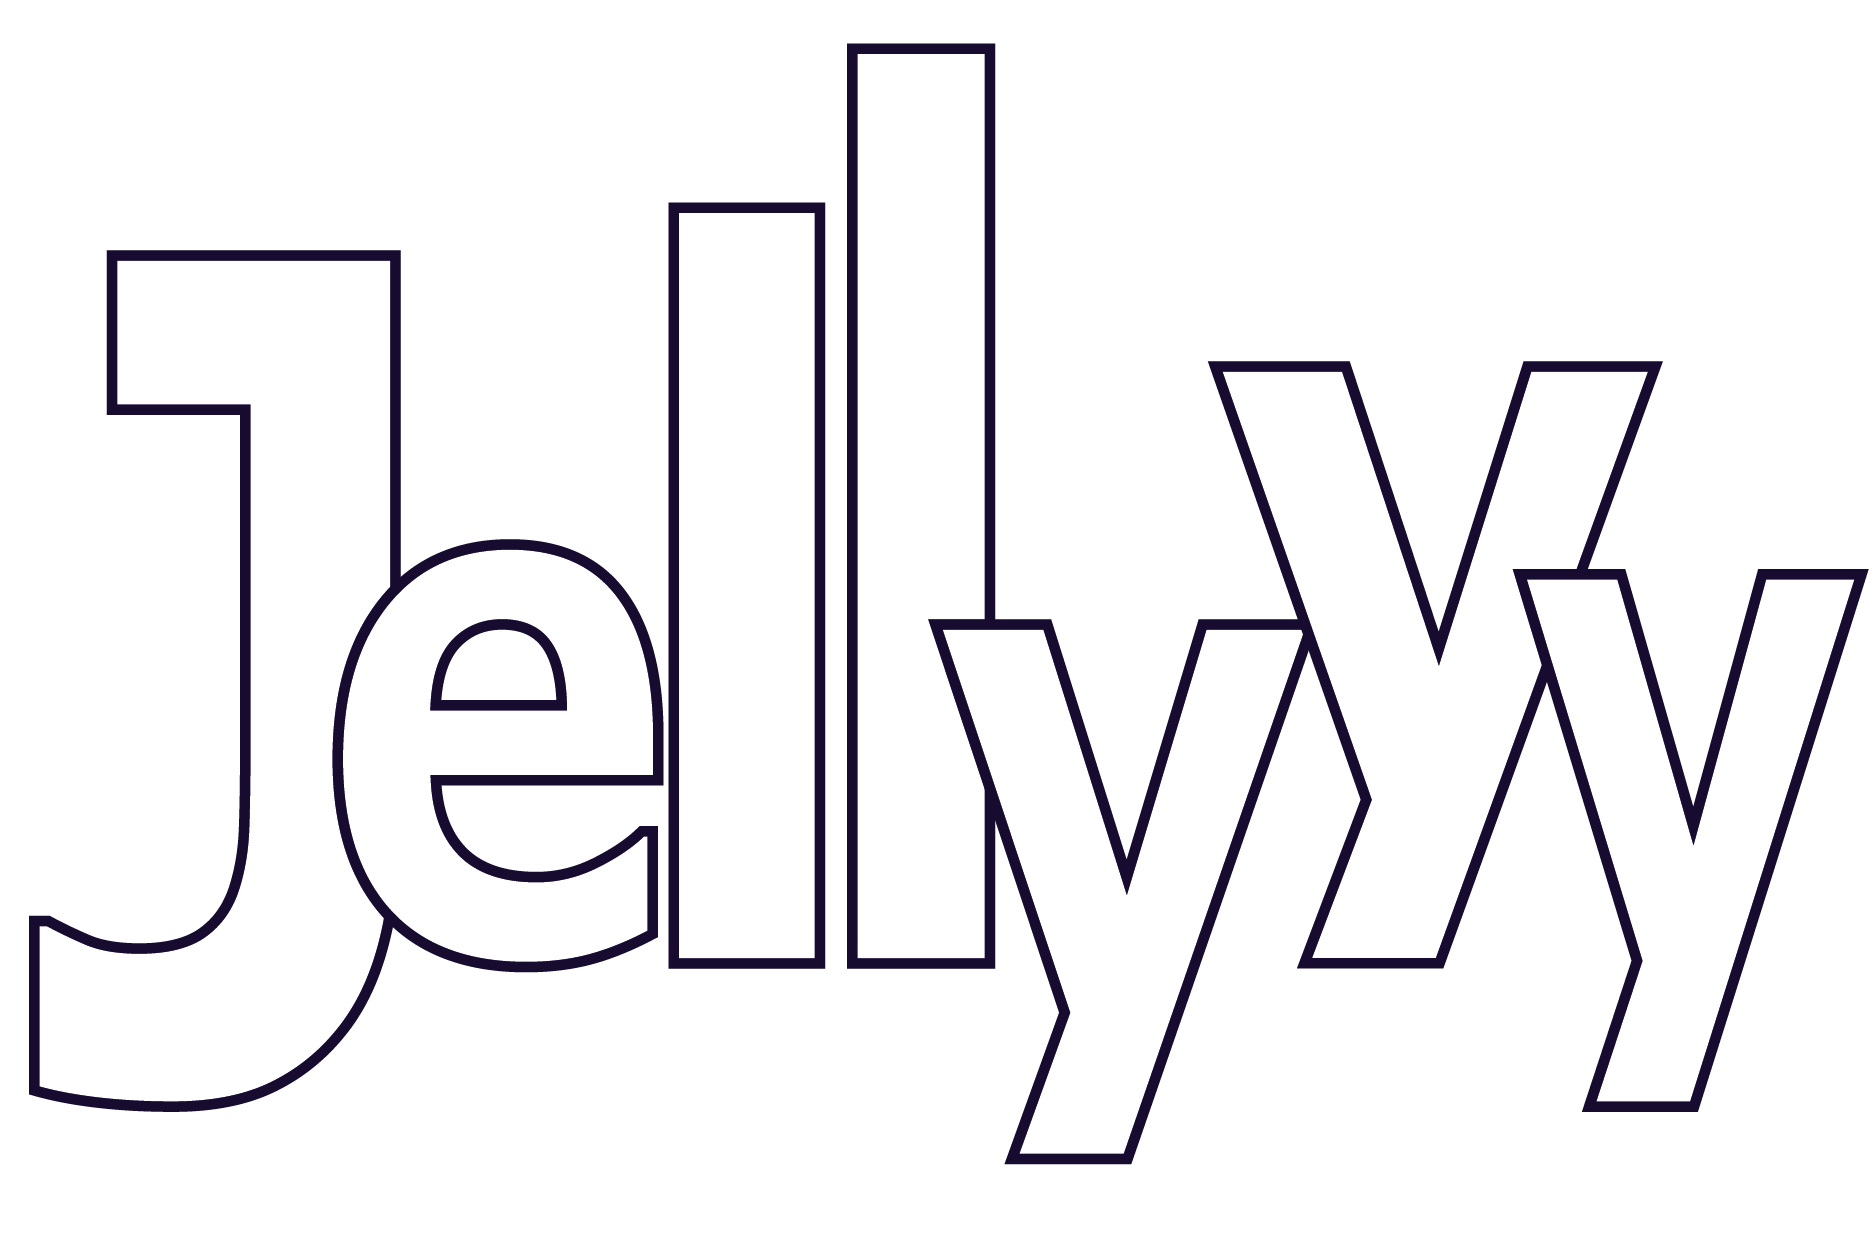 Jellyy